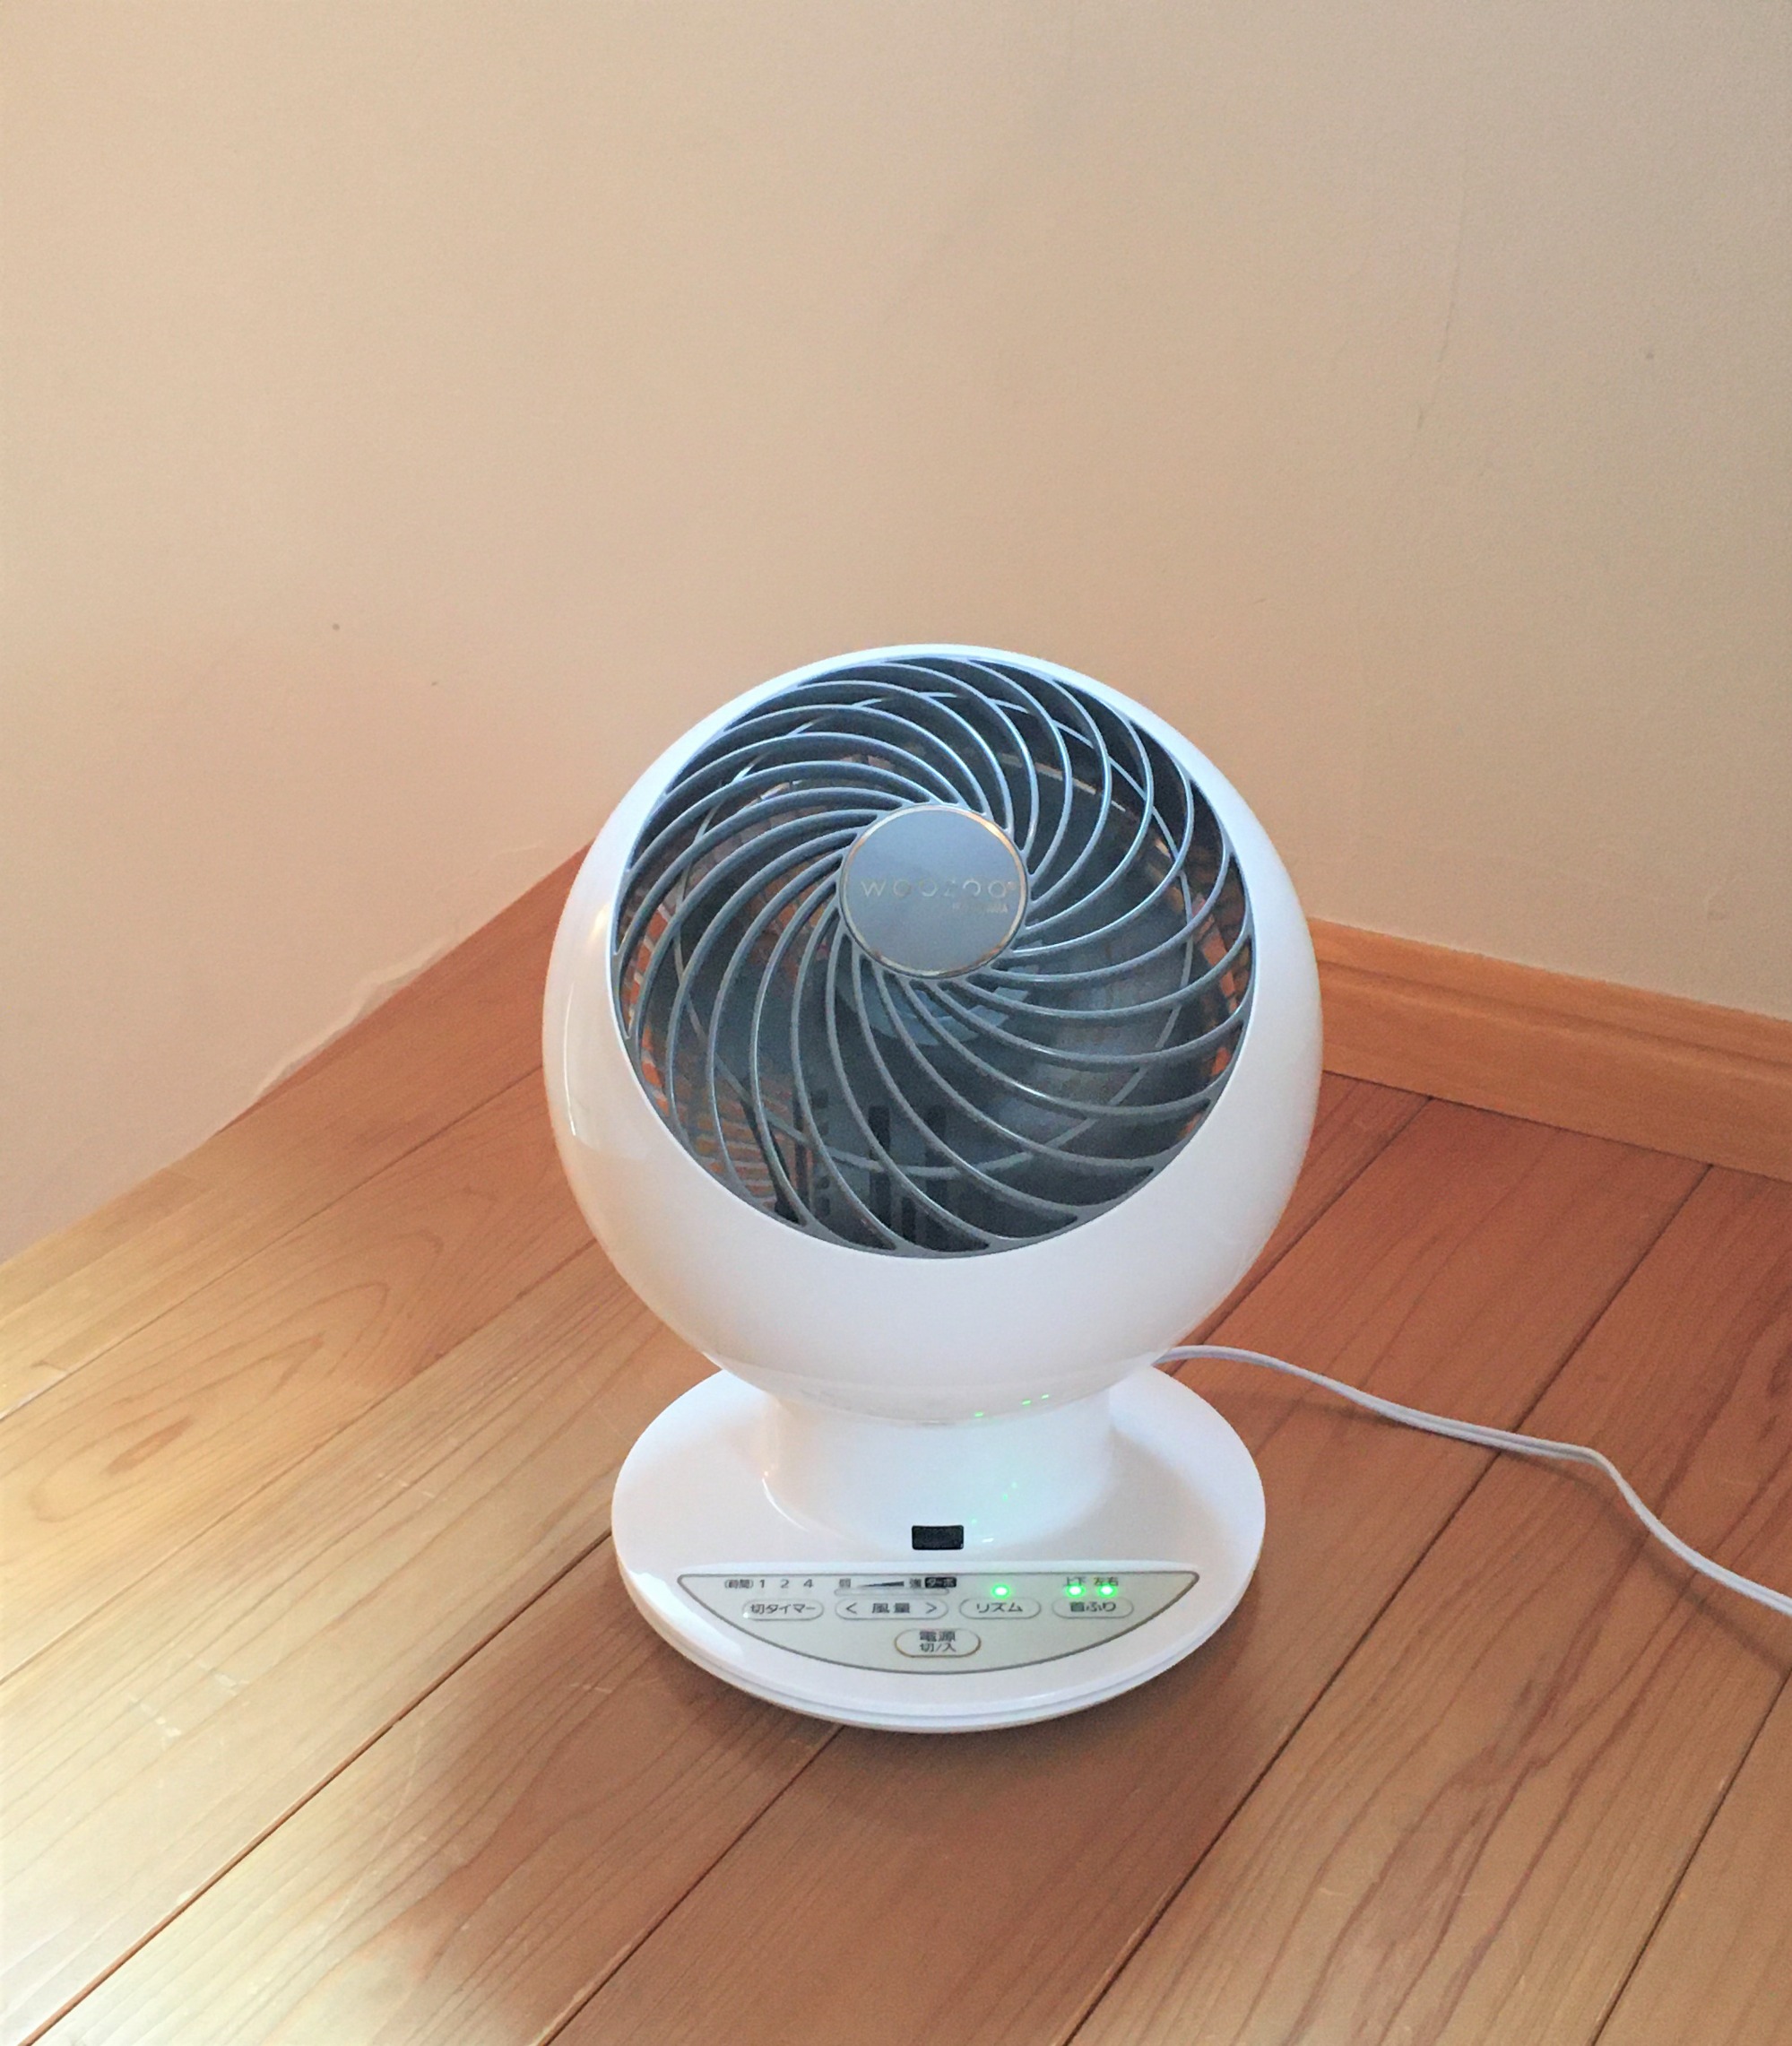 エアコンに扇風機の併用することで、部屋全体に冷風がまわり省エネで快適にお過ごしいただけます。